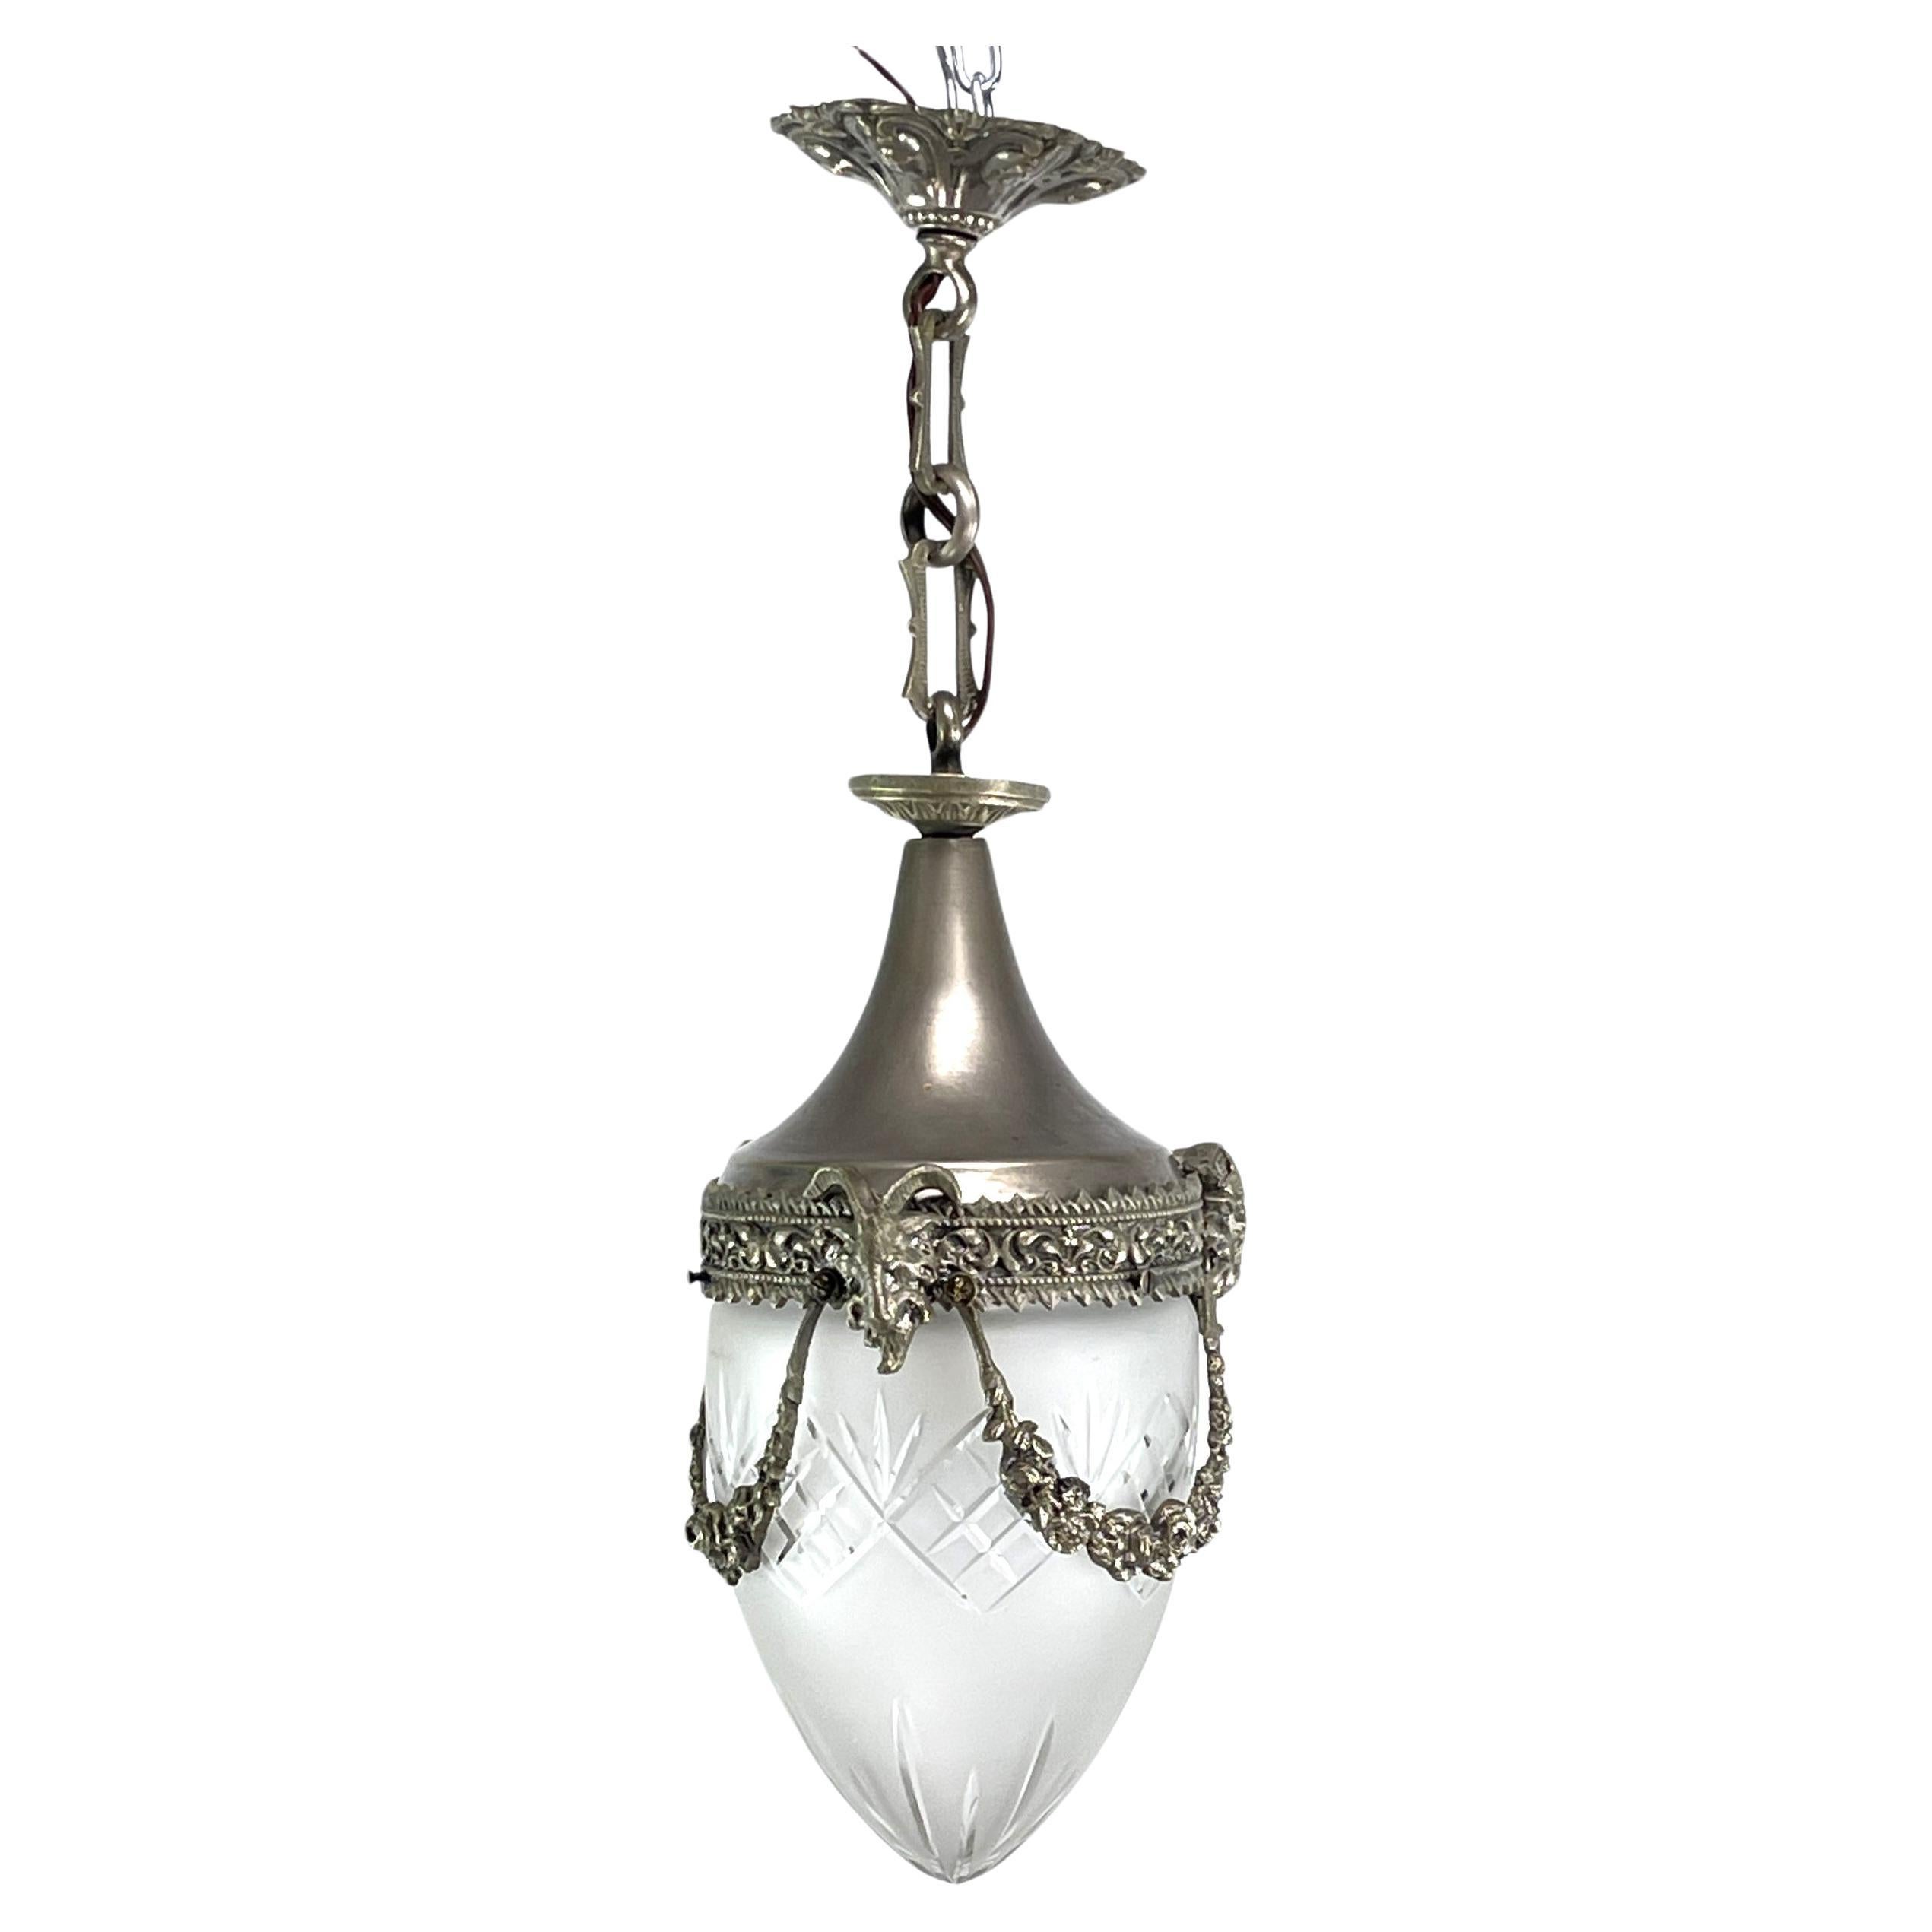 Lampe suspendue Art Nouveau en nickel en forme de goutte d'eau, années 1900